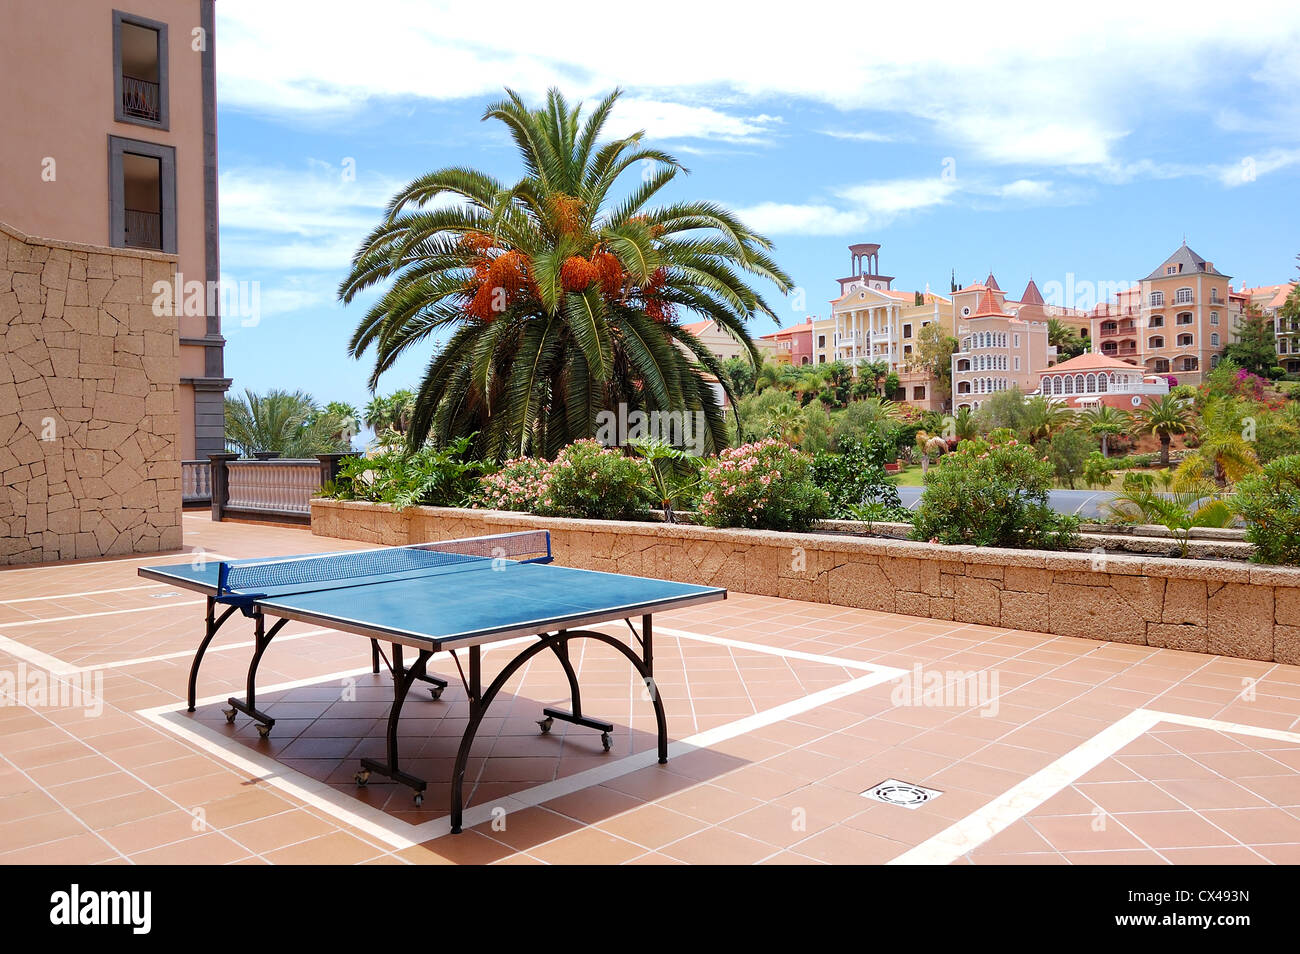 Tavolo da ping-pong presso hotel di lusso, isola di Tenerife, Spagna Foto  stock - Alamy